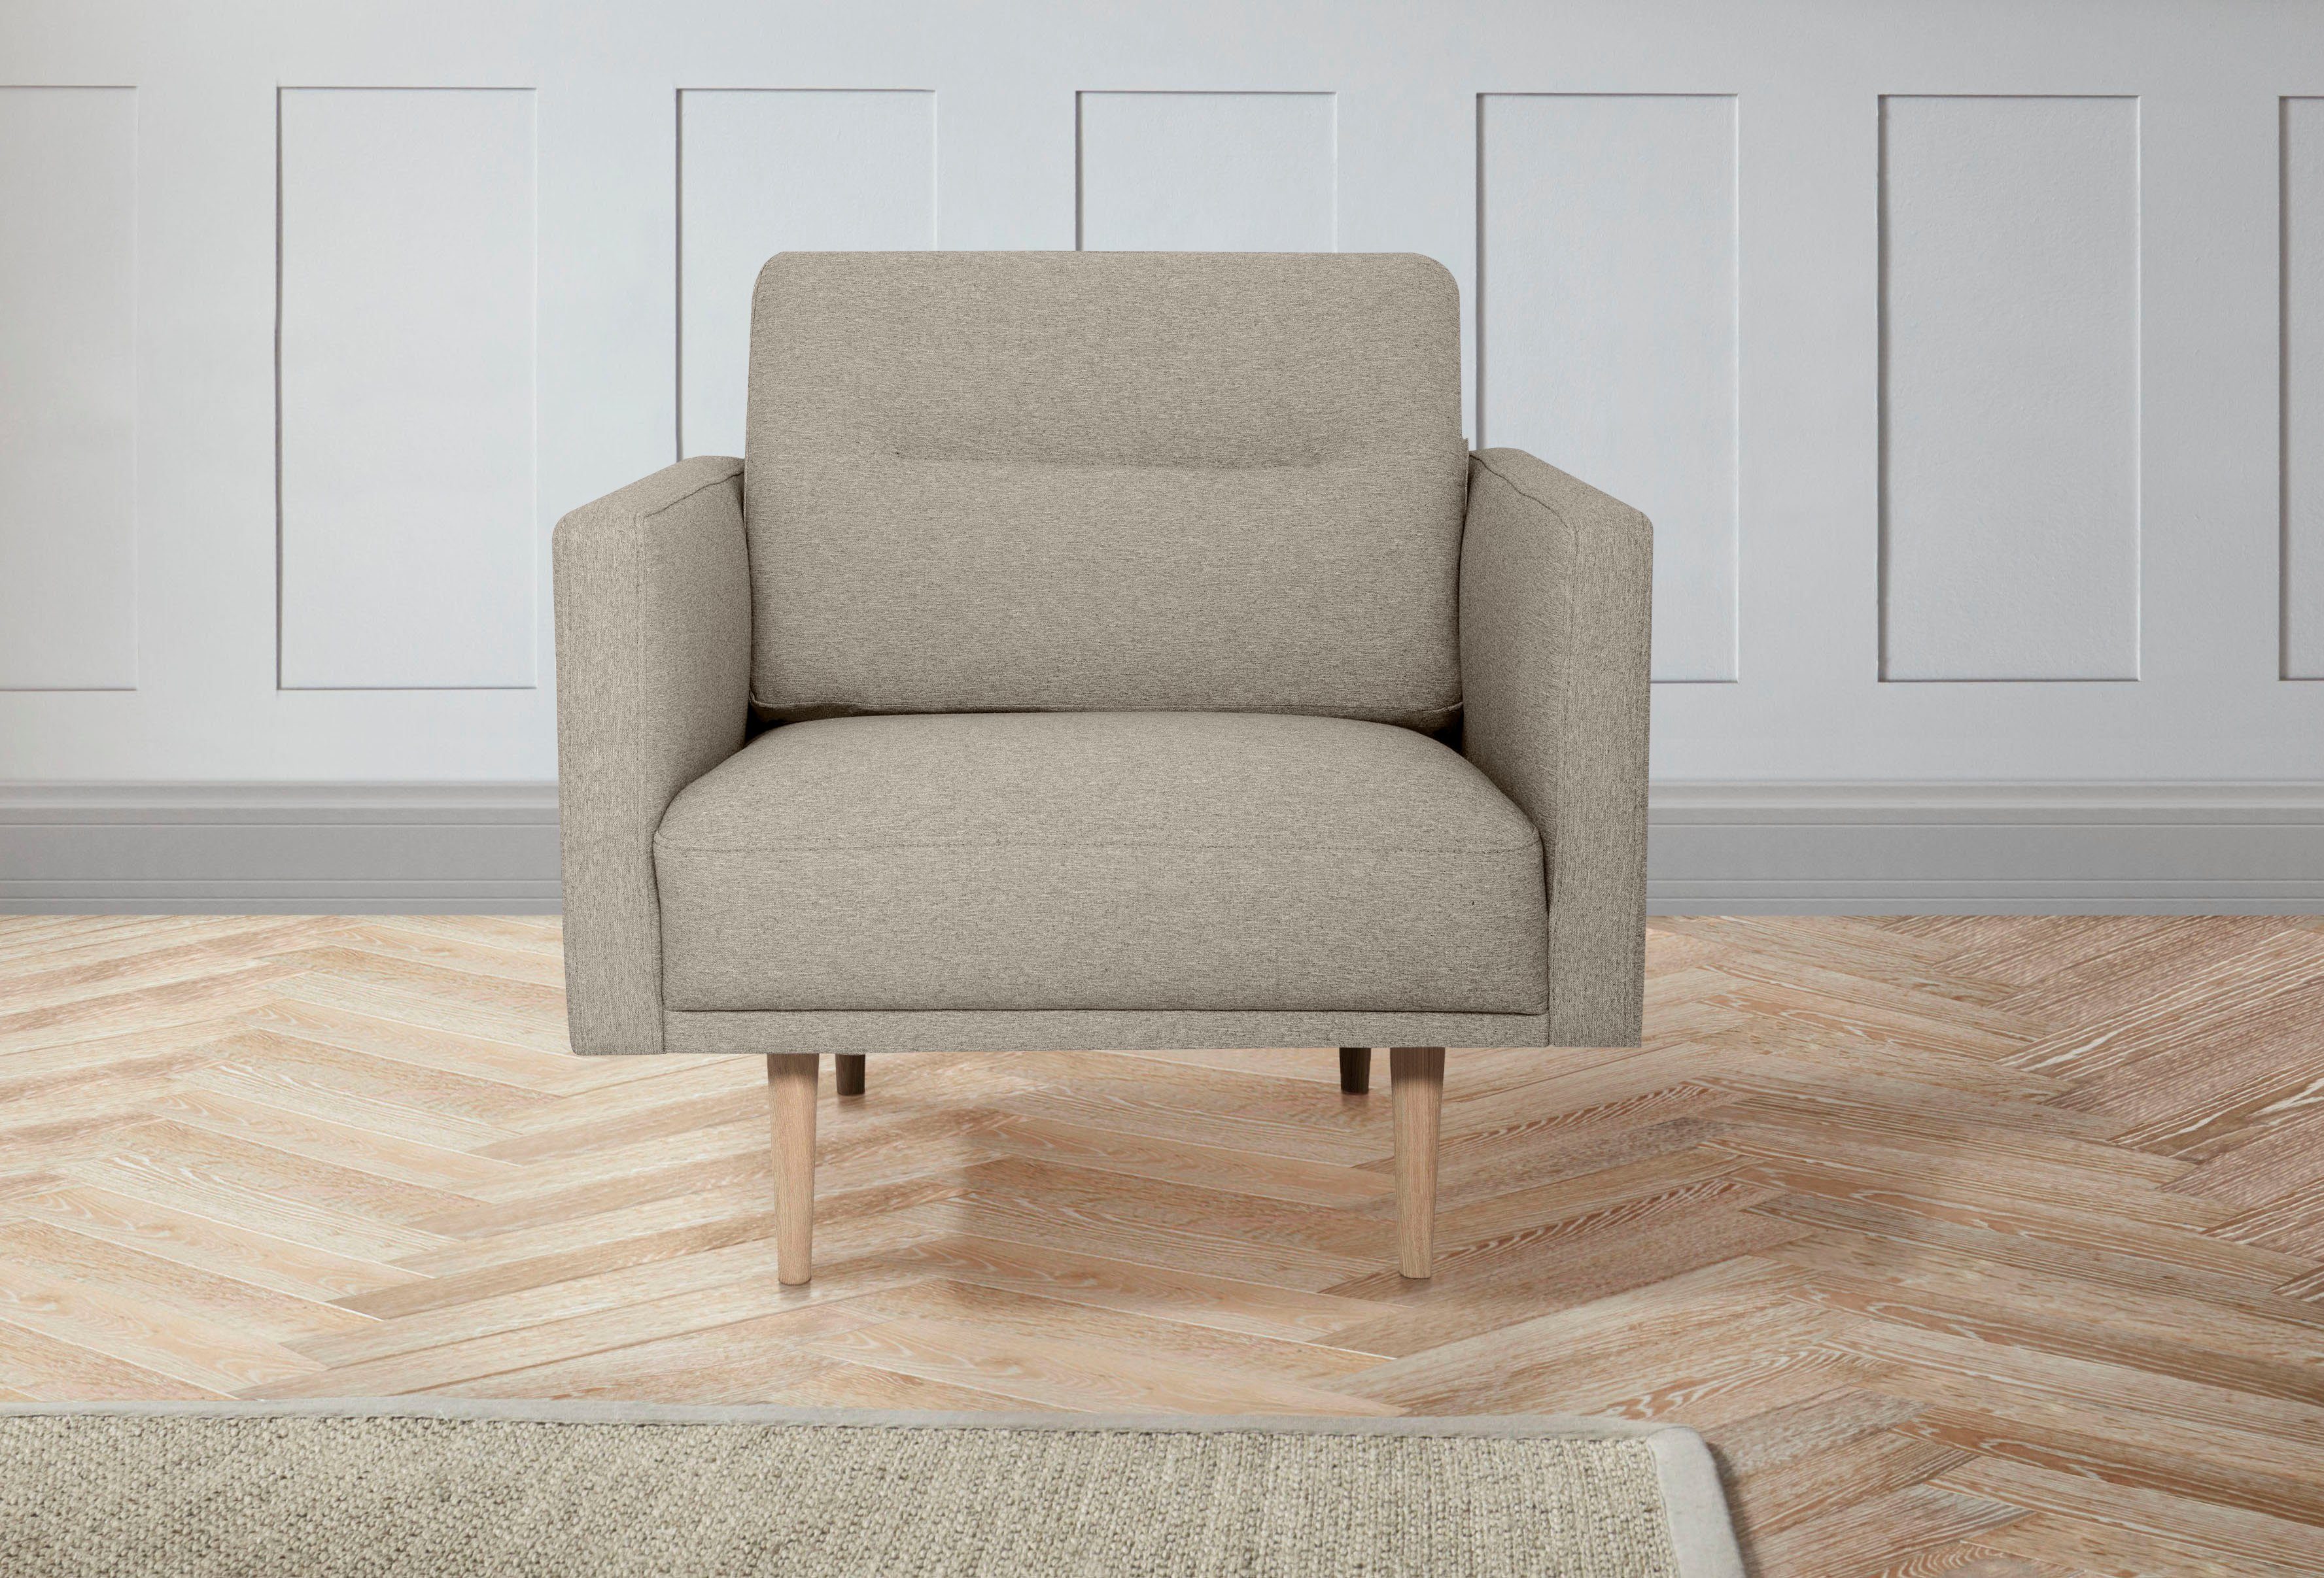 andas fauteuil brande in scandinavisch design, verschillende kleuren beschikbaar beige